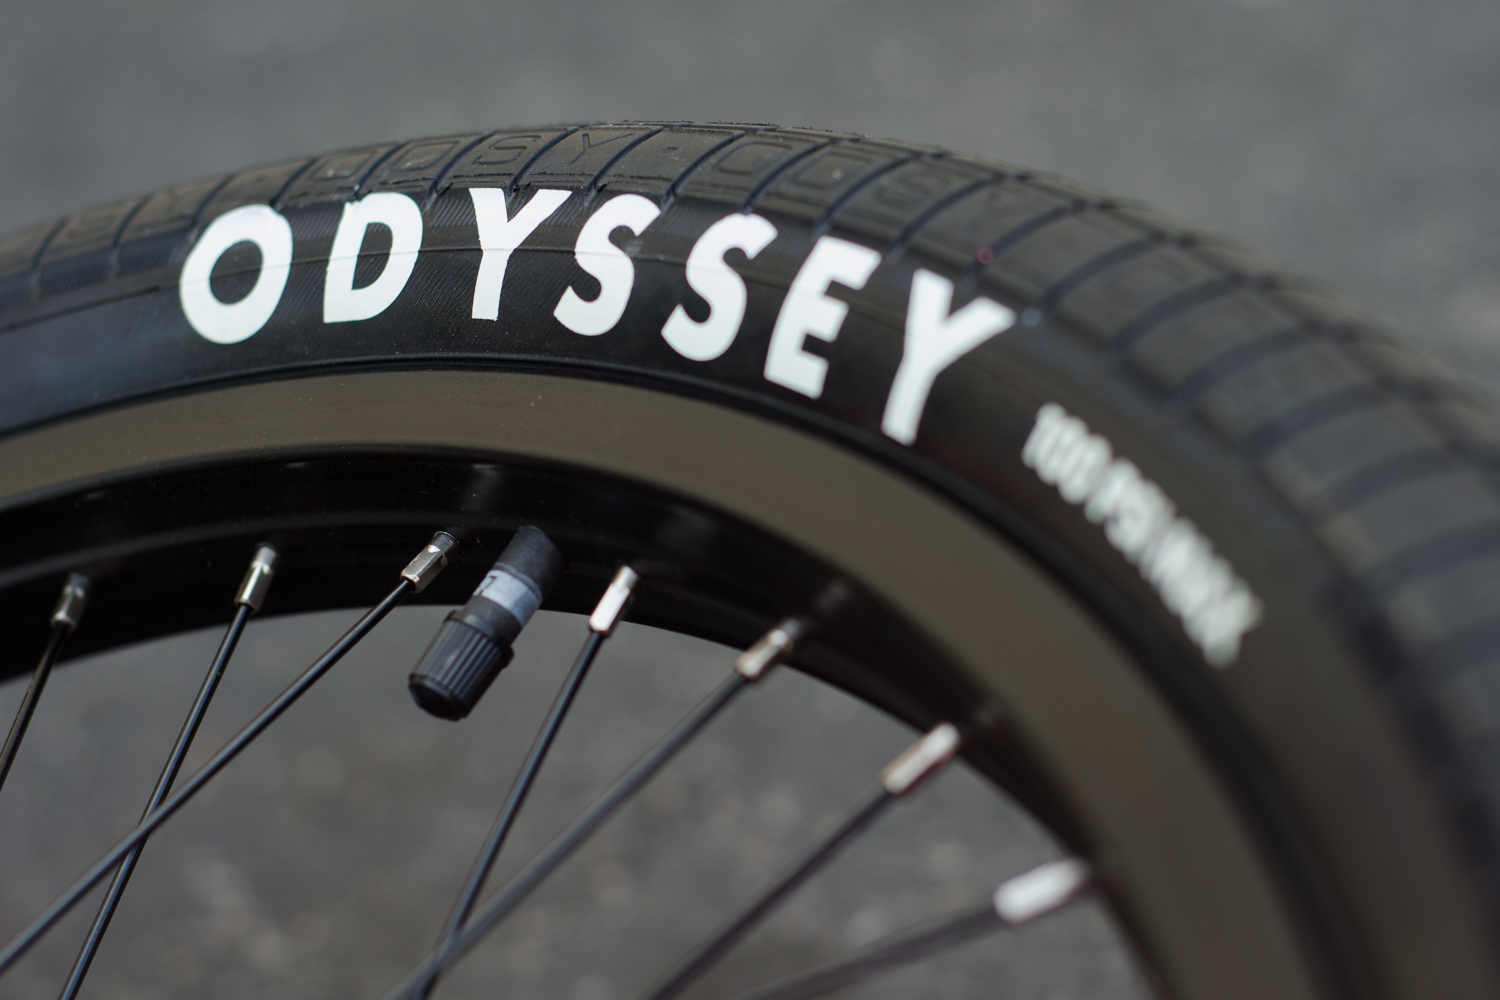 odyssey tires bmx